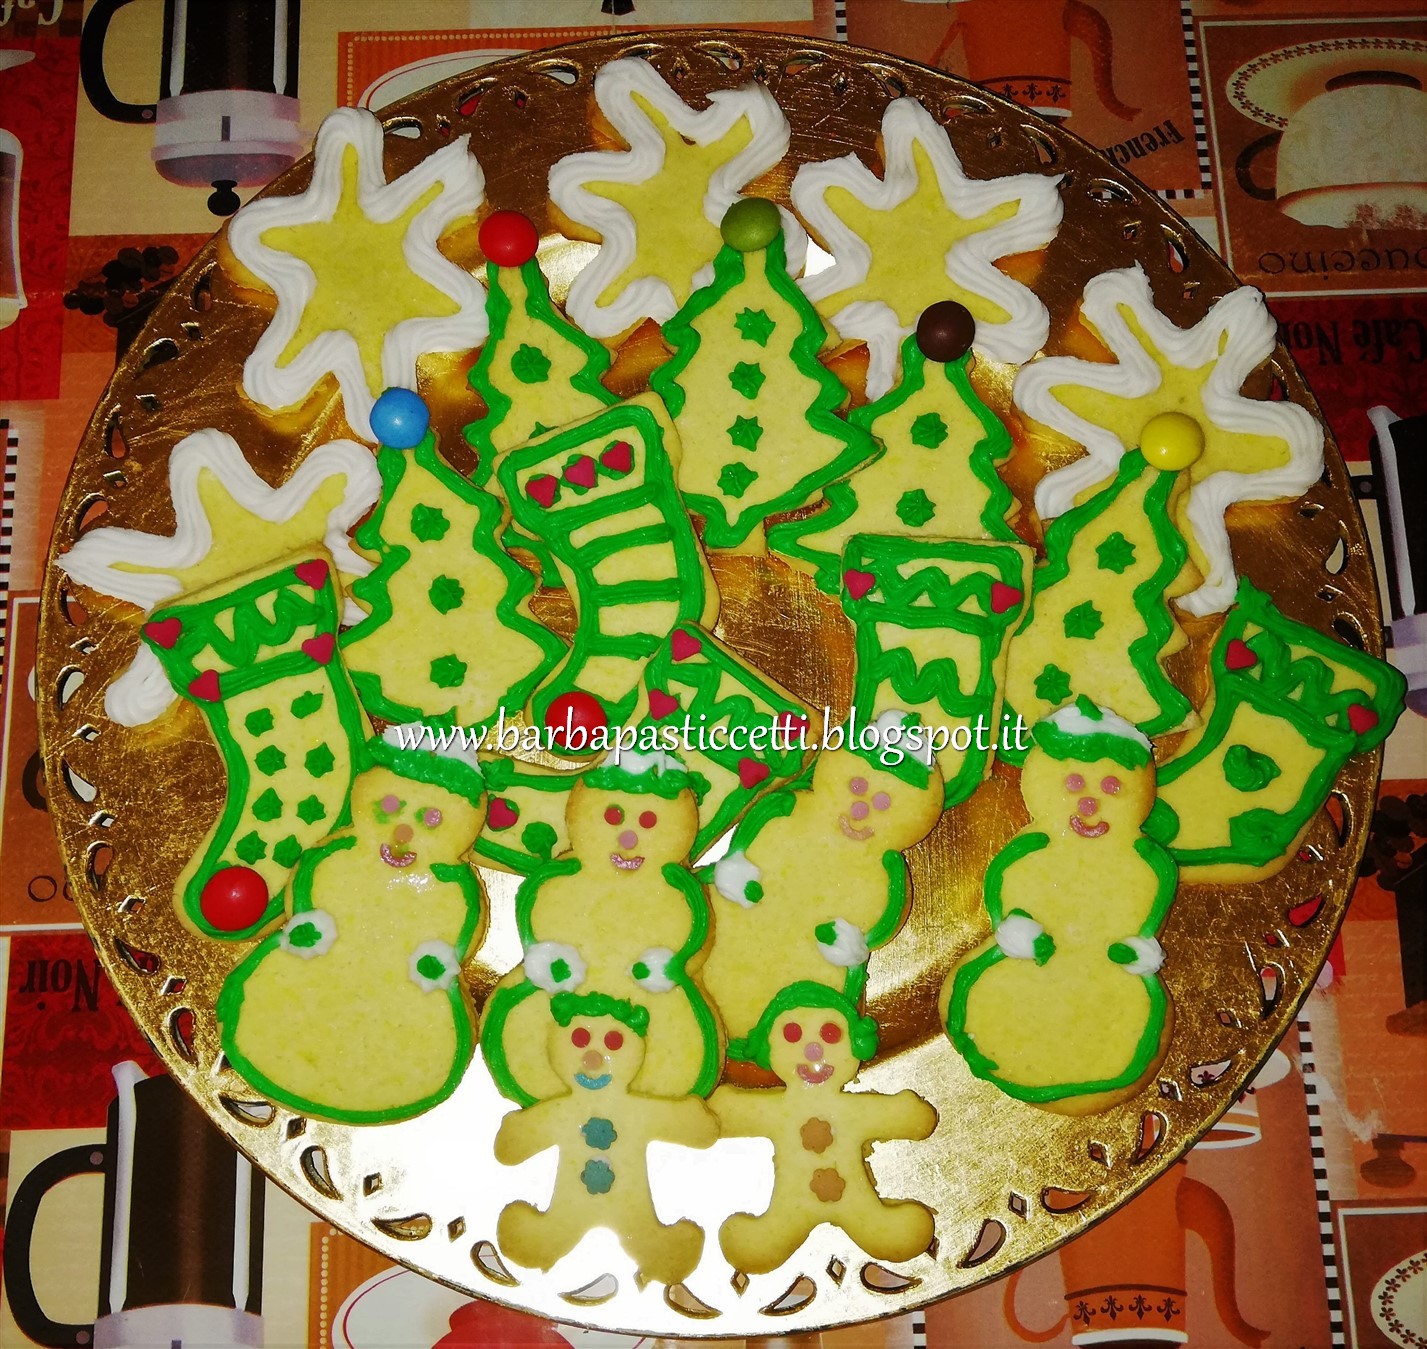 Biscotti Di Natale Farina Di Riso.I Barba Pasticcetti Biscotti Di Natale Con Farina Di Riso E Di Mais